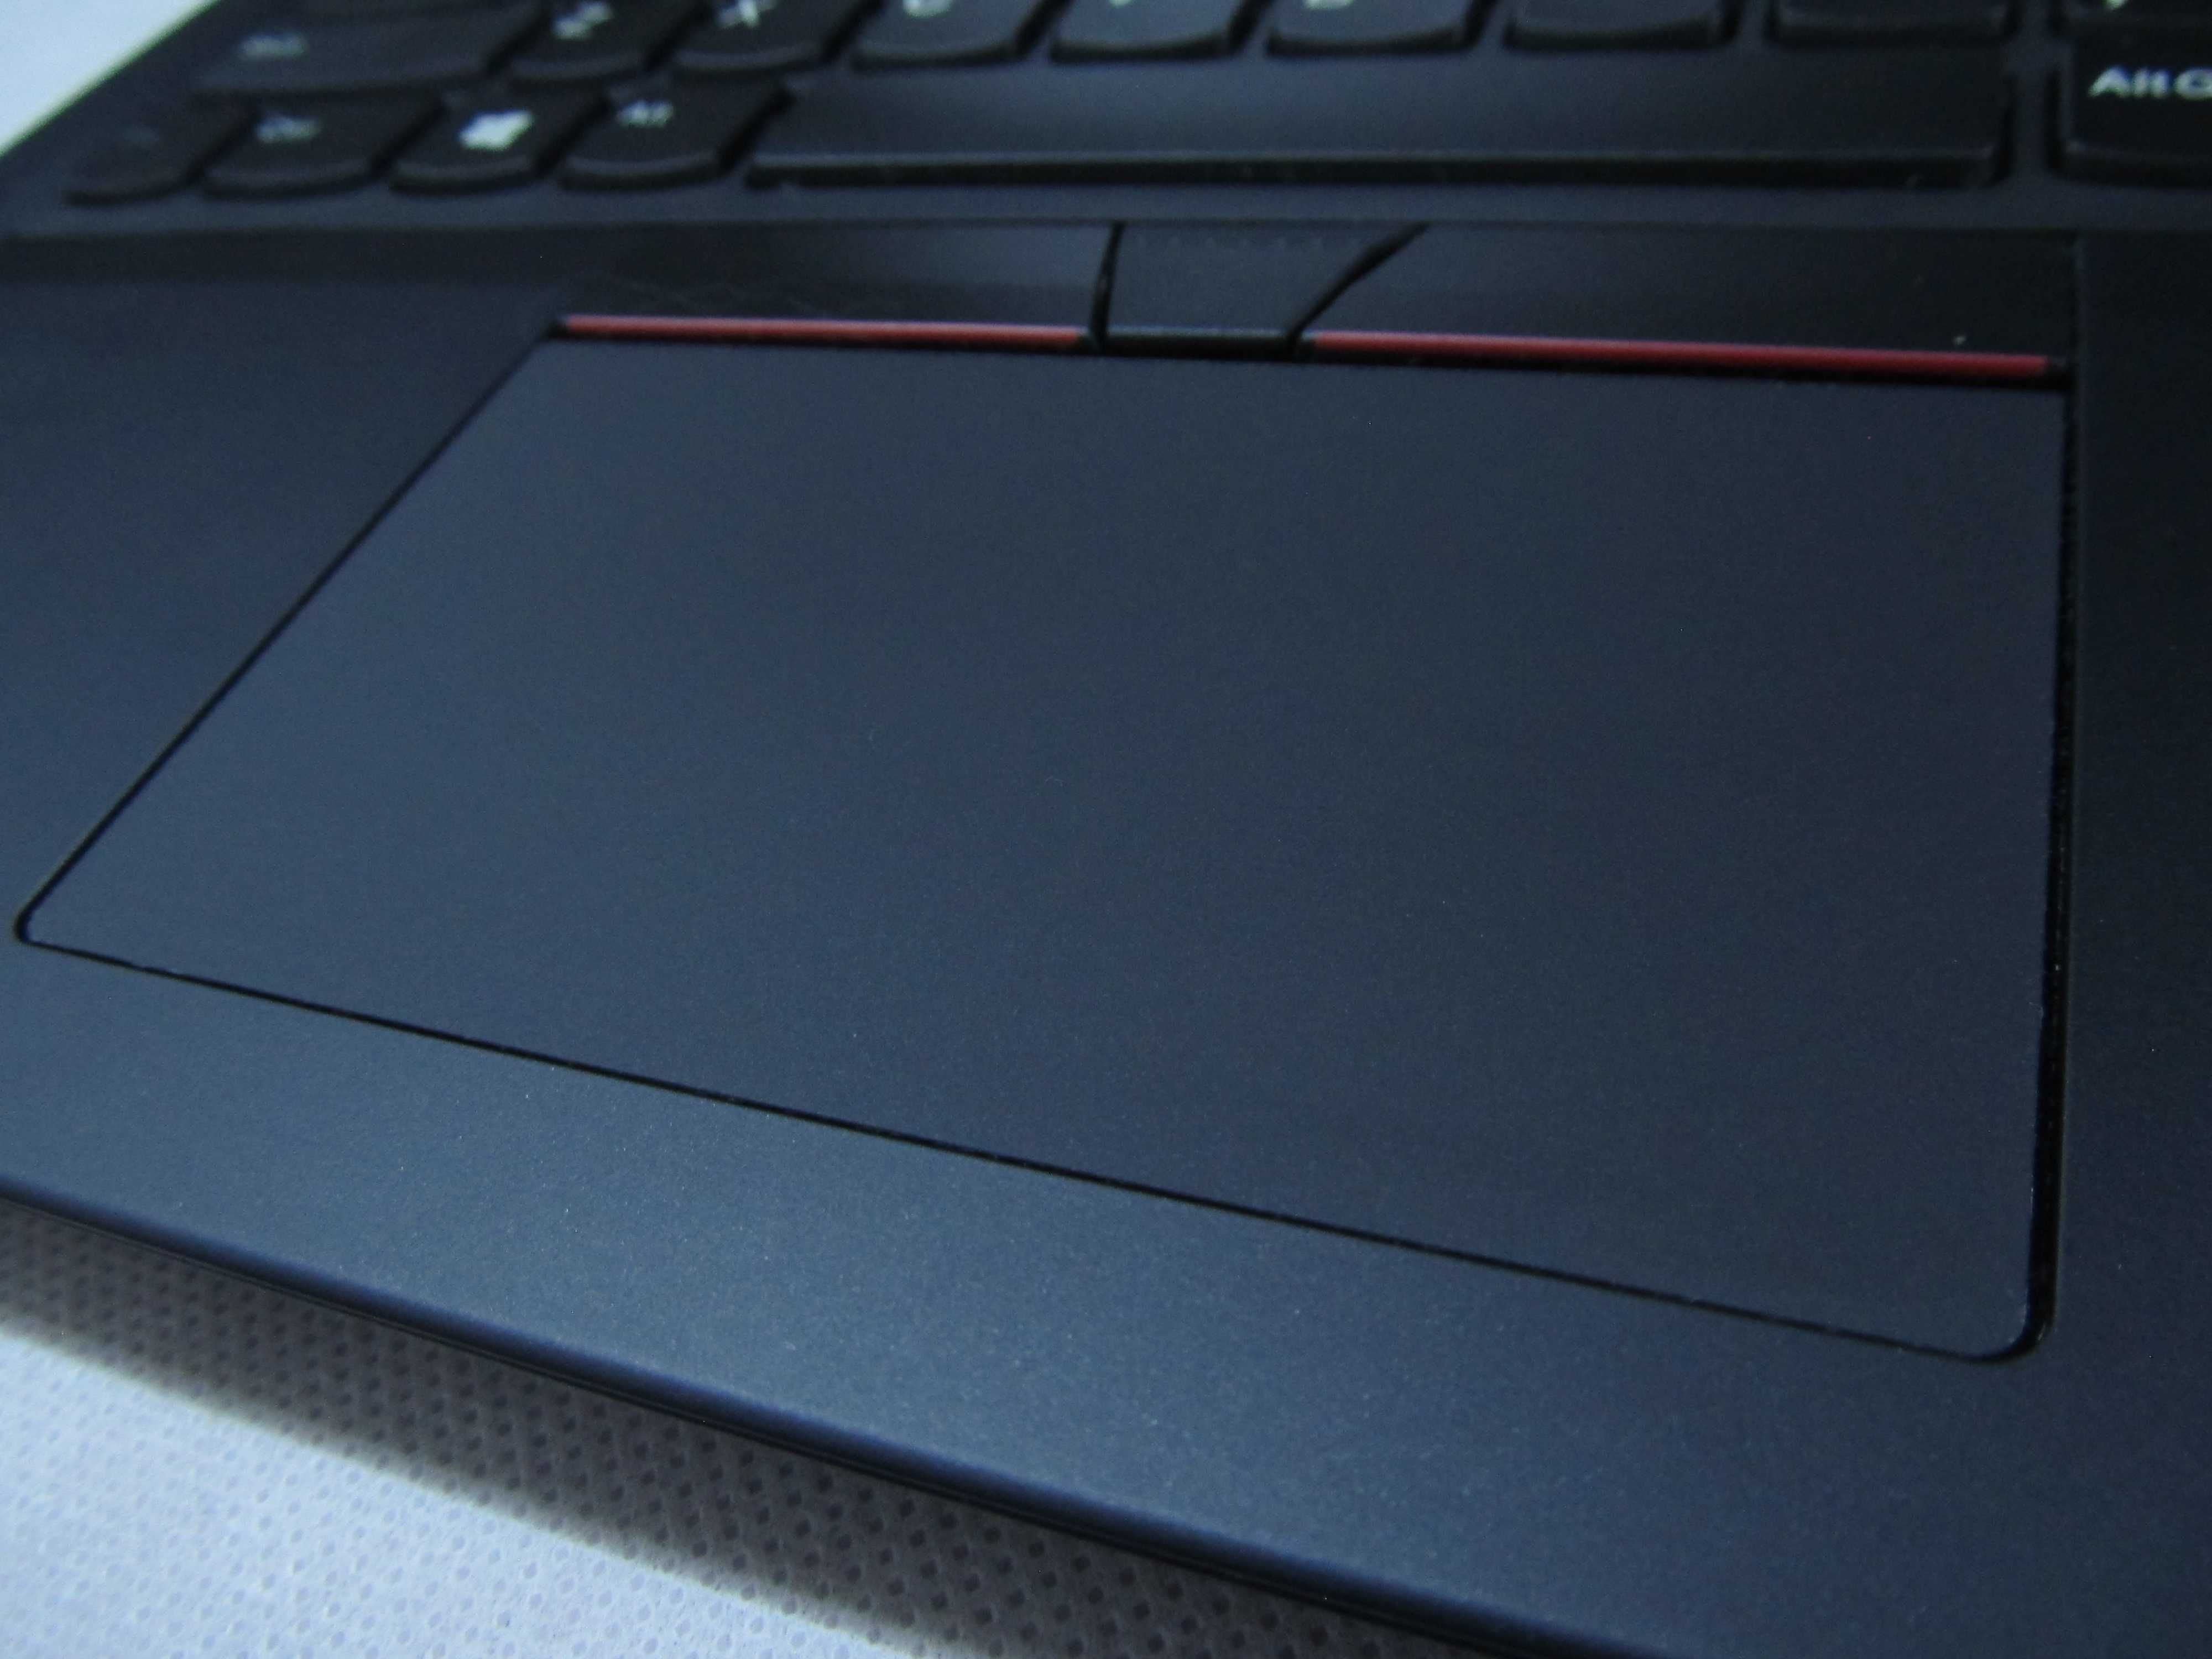 SUPER PROMOCJA Lenovo ThinkPad L380 i5 8250U 8GB dysk SSD 256GB Laptop